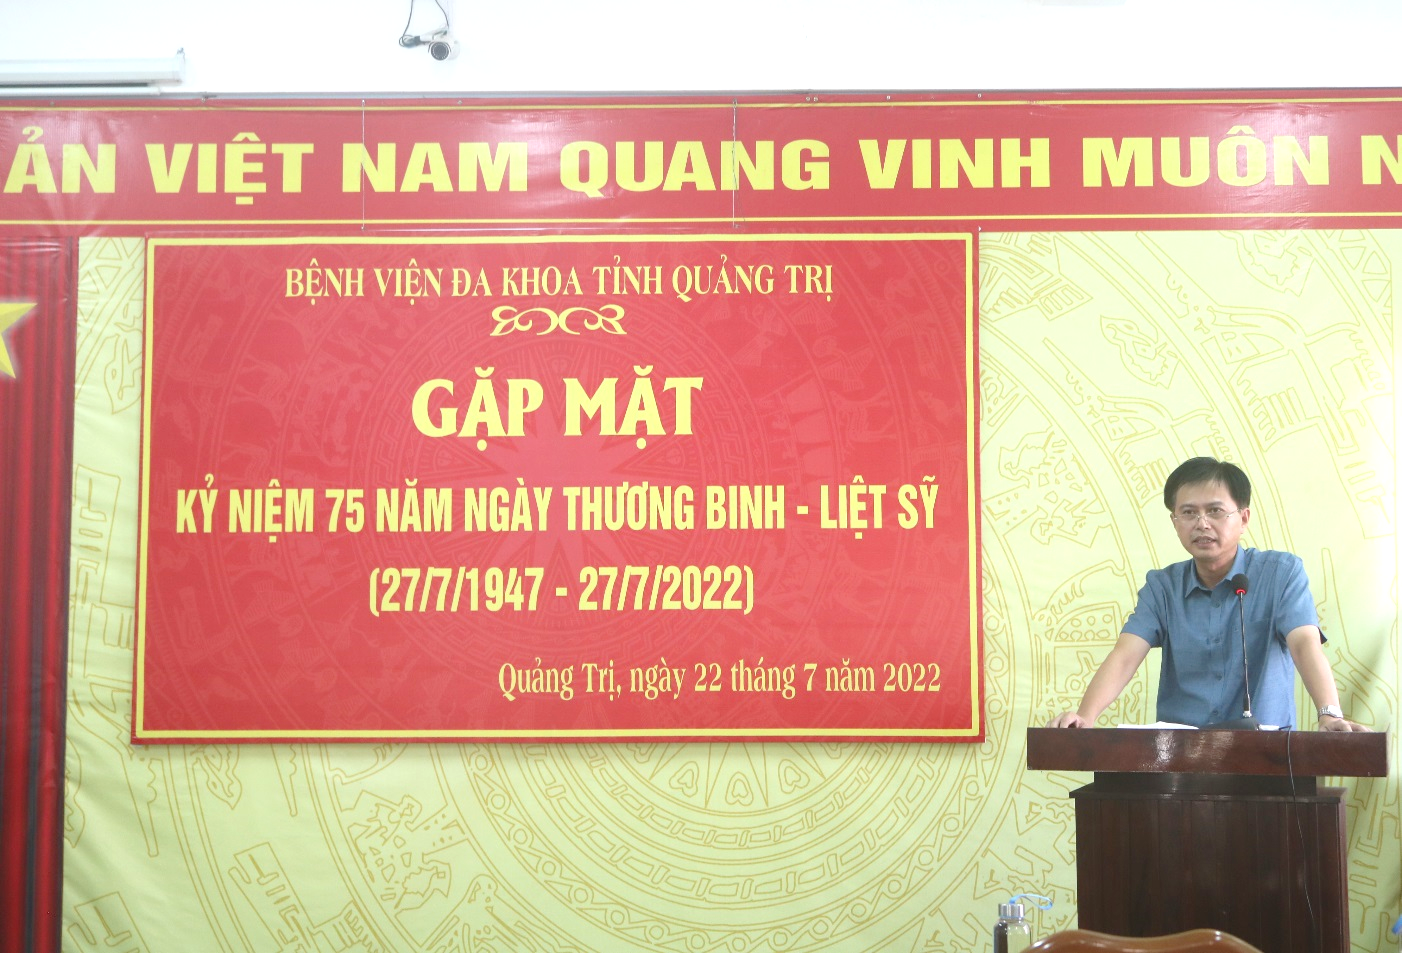 Đồng chí Phan Xuân Nam - Phó Giám đốc - Chủ tịch Hội Cựu chiến binh Bệnh viện phát biểu tại buổi gặp mặt